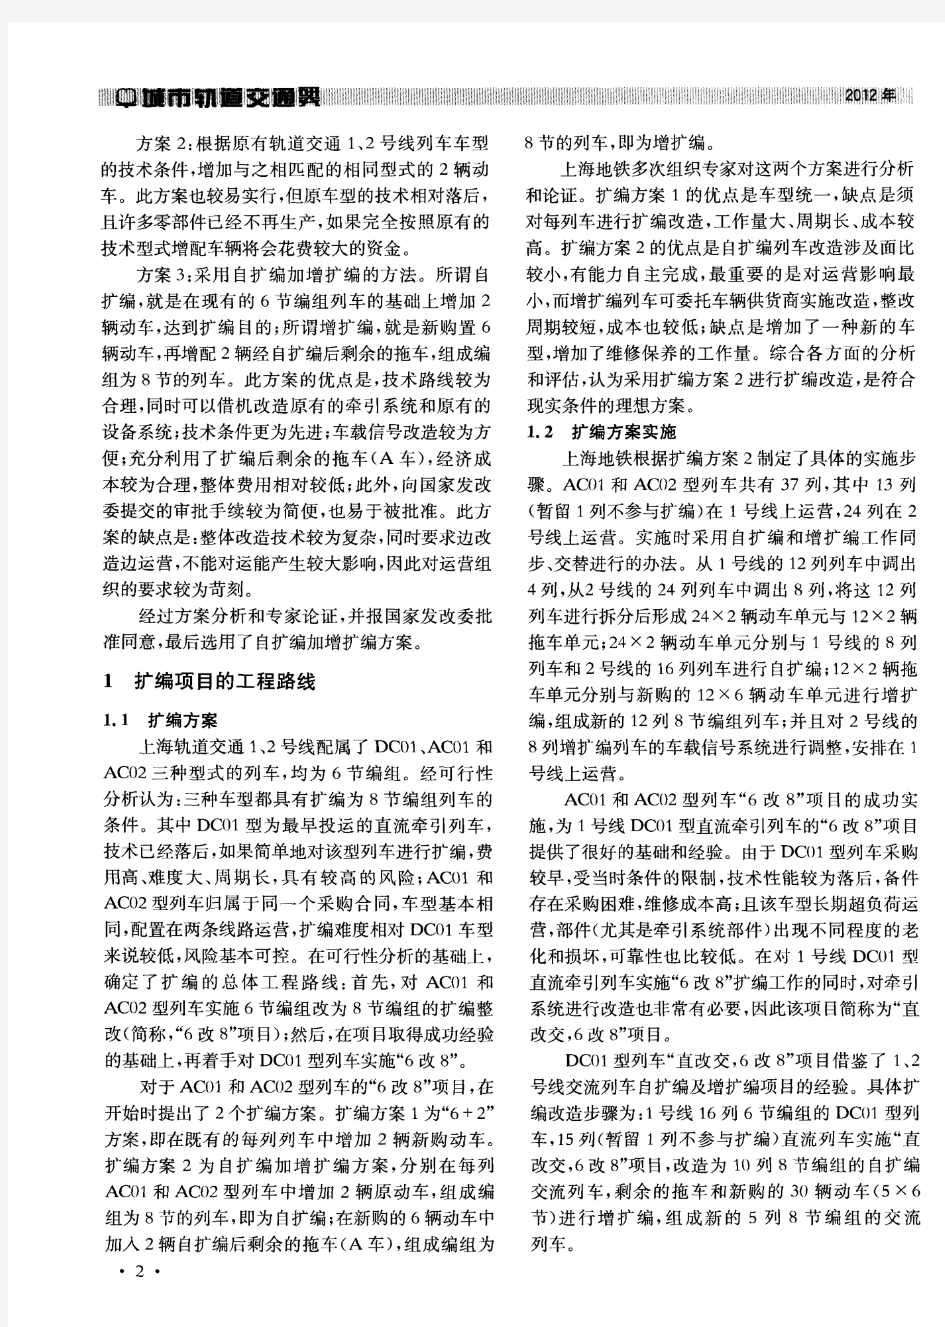 上海轨道交通1、2号线列车编组“6改8”项目的技术对策及实施效果分析